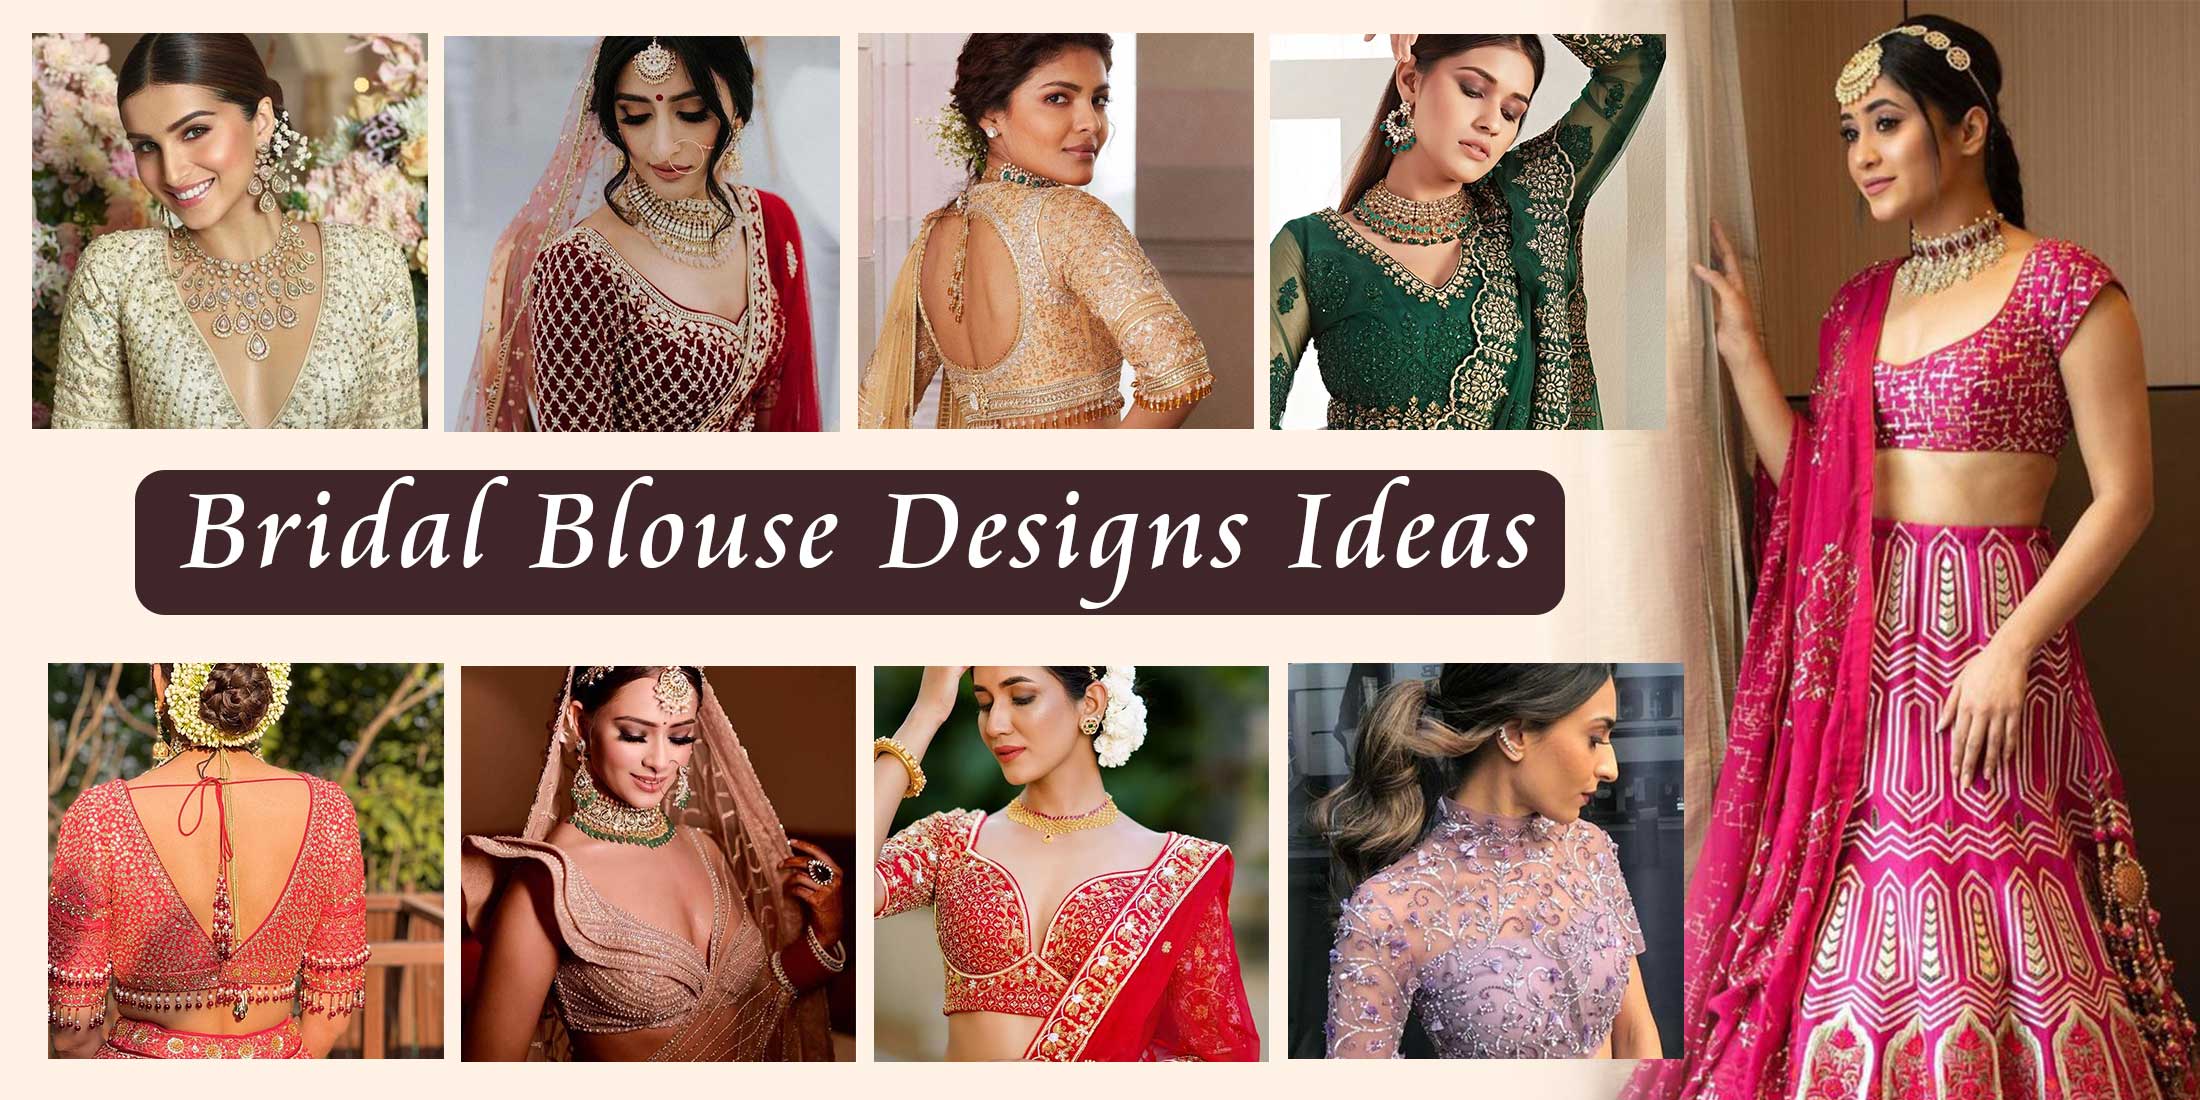 60+ Lehenga Blouse Designs To Browse & Take Inspiration From! | Lehenga  blouse designs, Bridal lehenga blouse design, Indian bridal dress